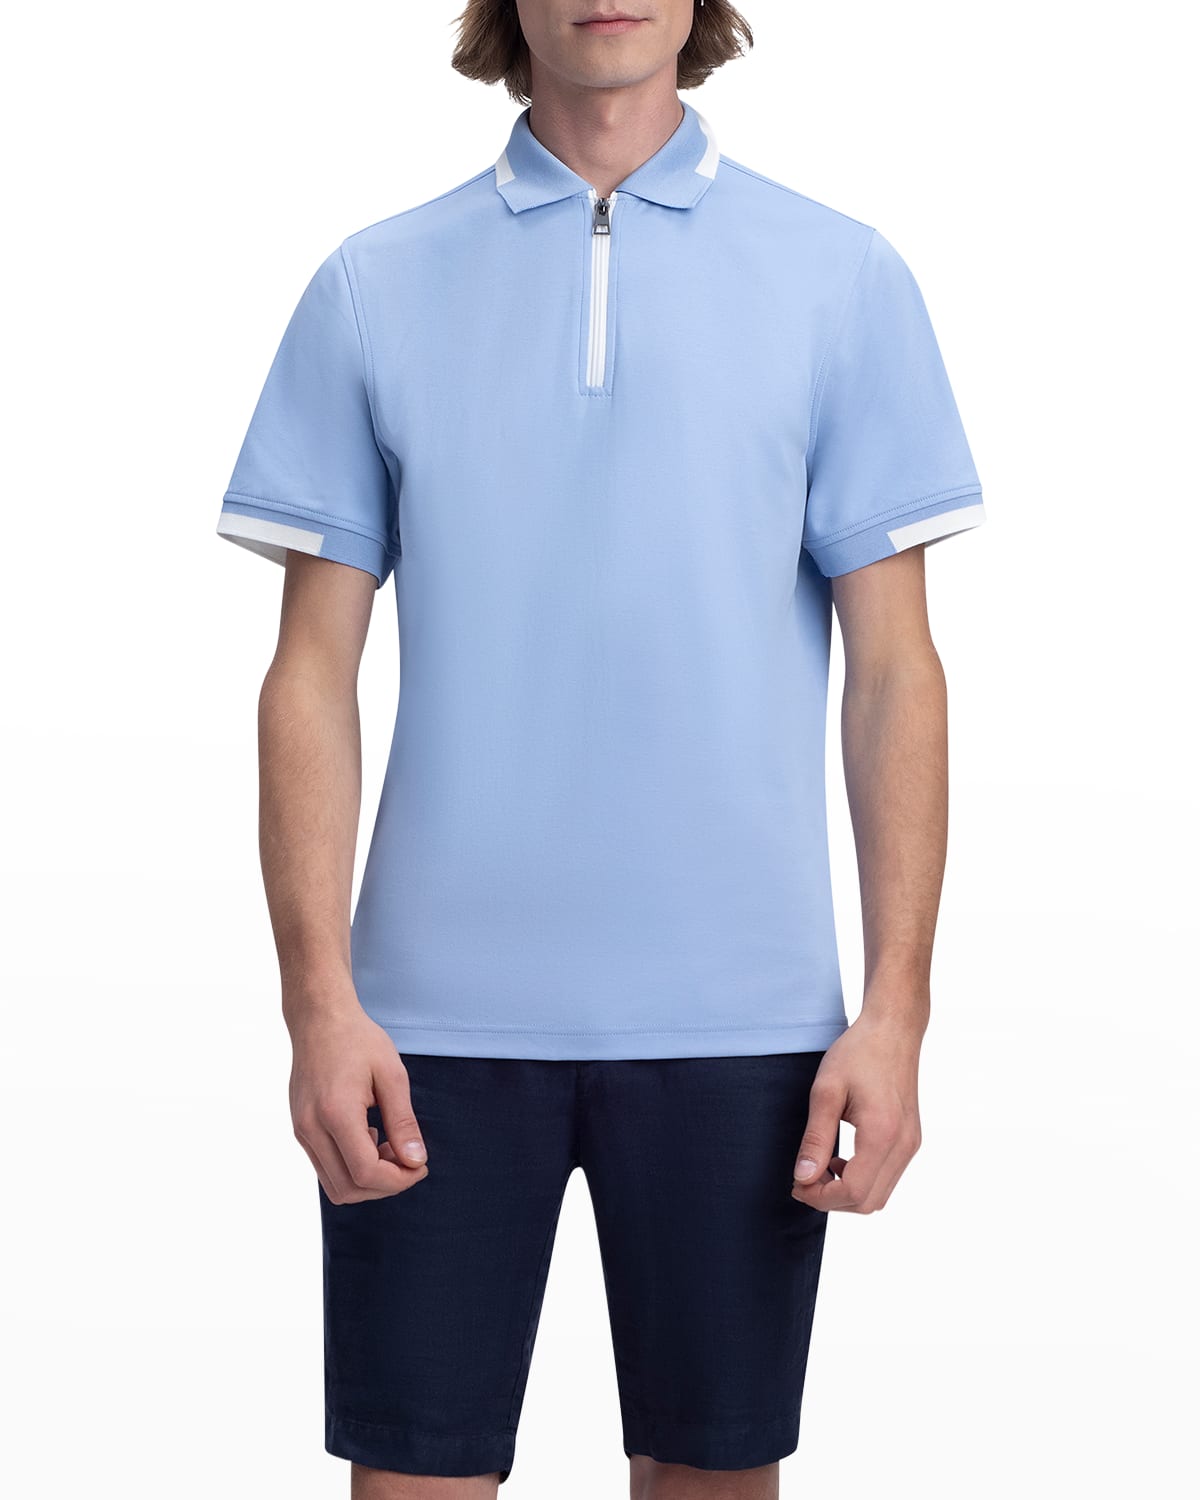 New Everton Mens Polo Shirt Contrast Collar Small Logo Polo Shirt 